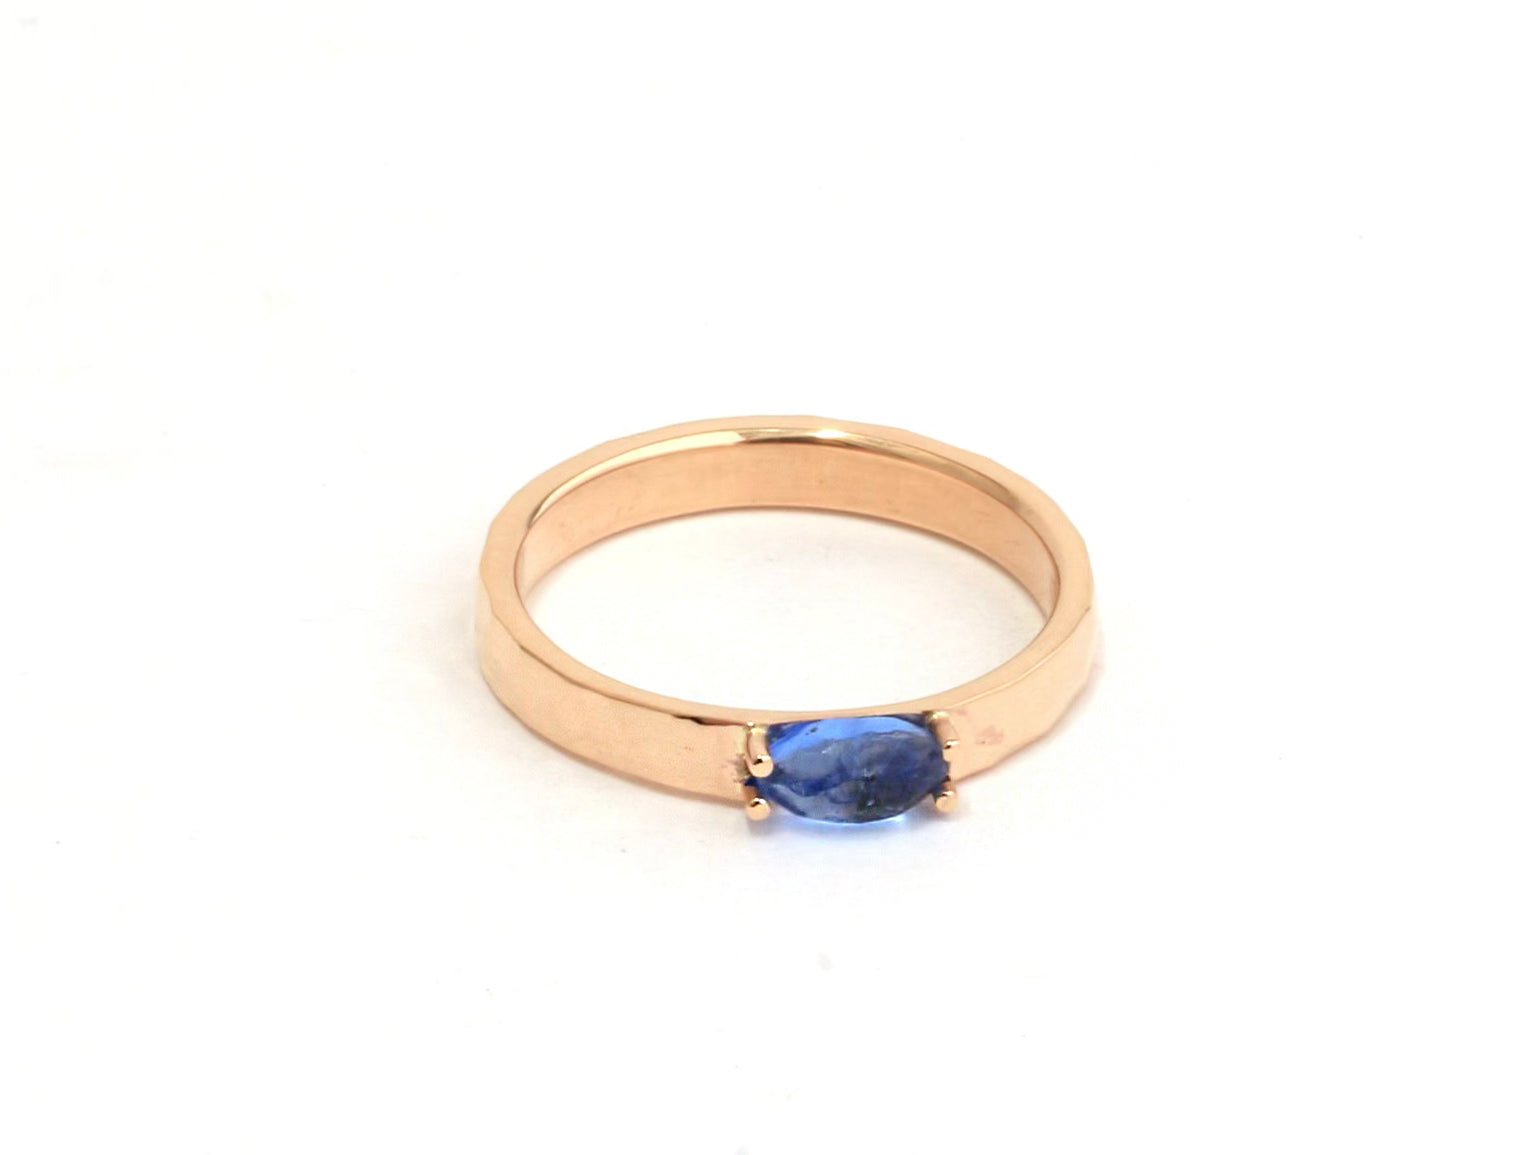 Marleau blue sea glass ring